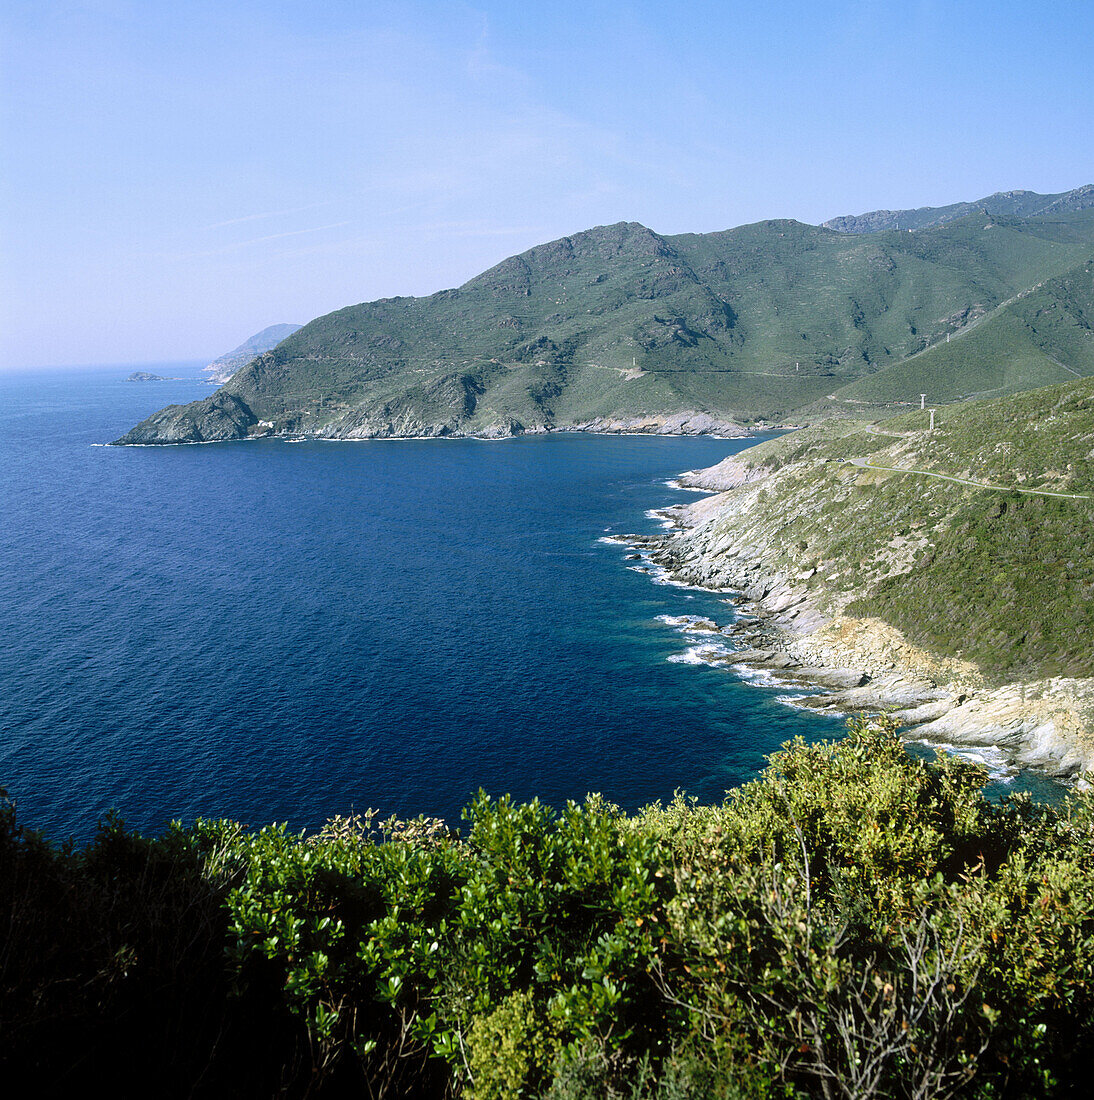 Marine de Giottani. Cape Corse. Corsica Island. France